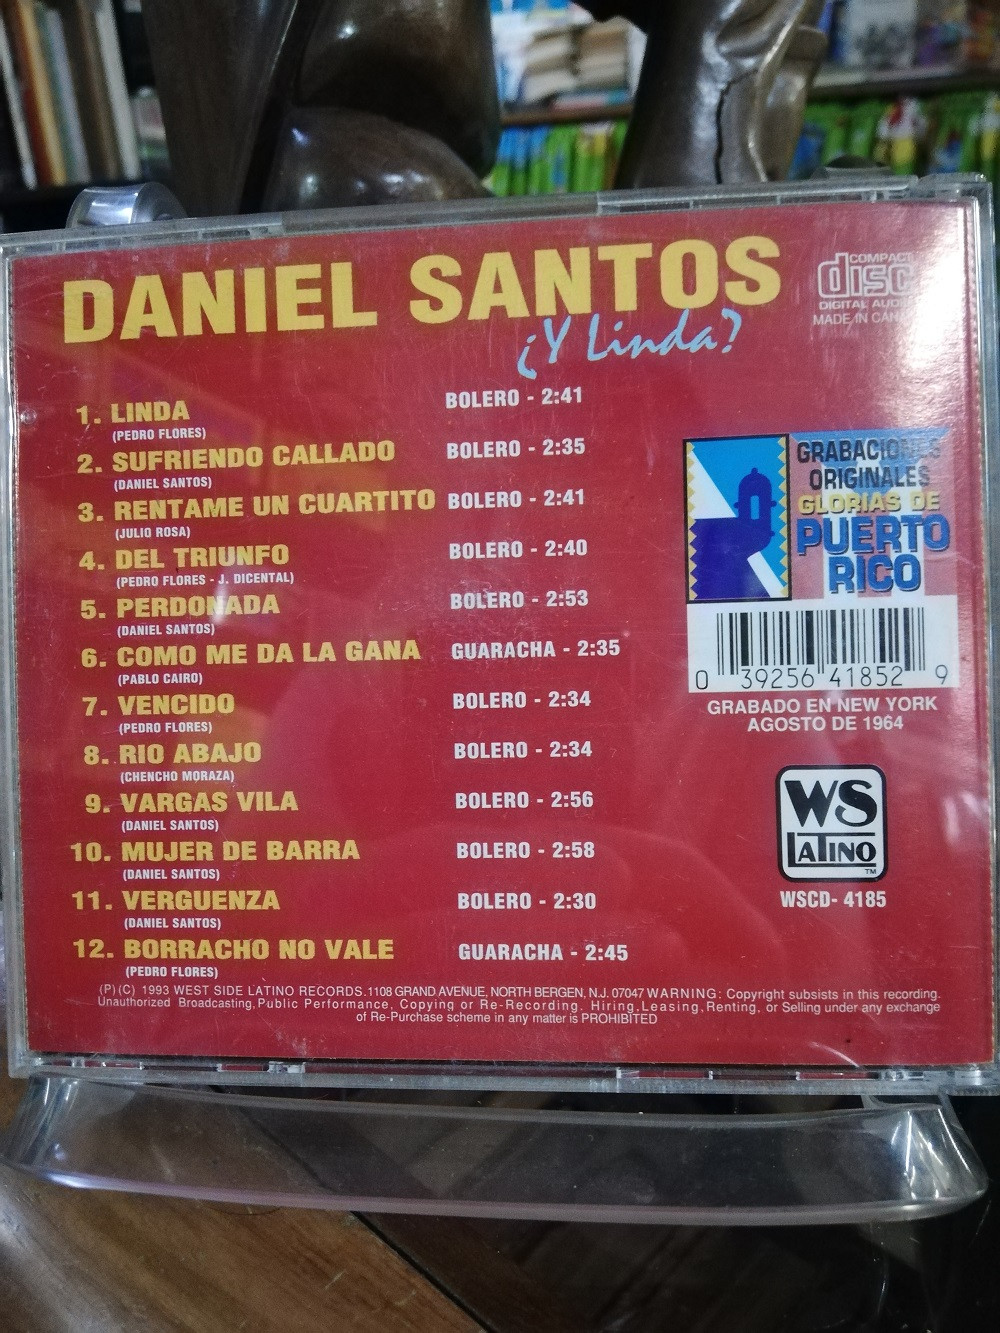 Imagen CD DANIEL SANTOS CON GUITARRAS - Y LINDA? 2